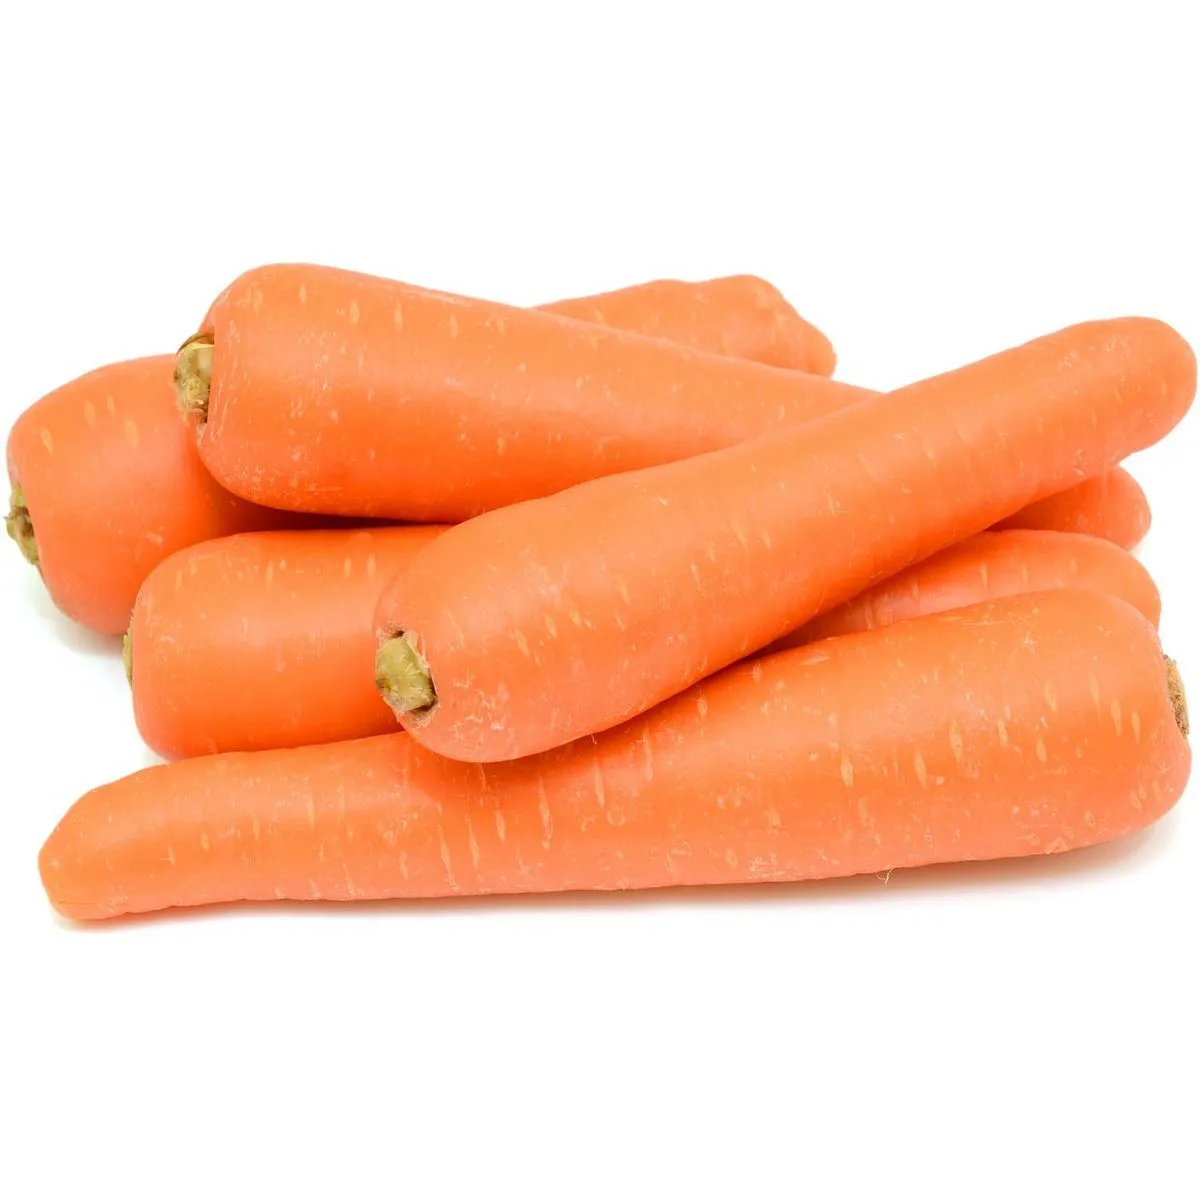  carottes bio filière auchan cultivons le bon